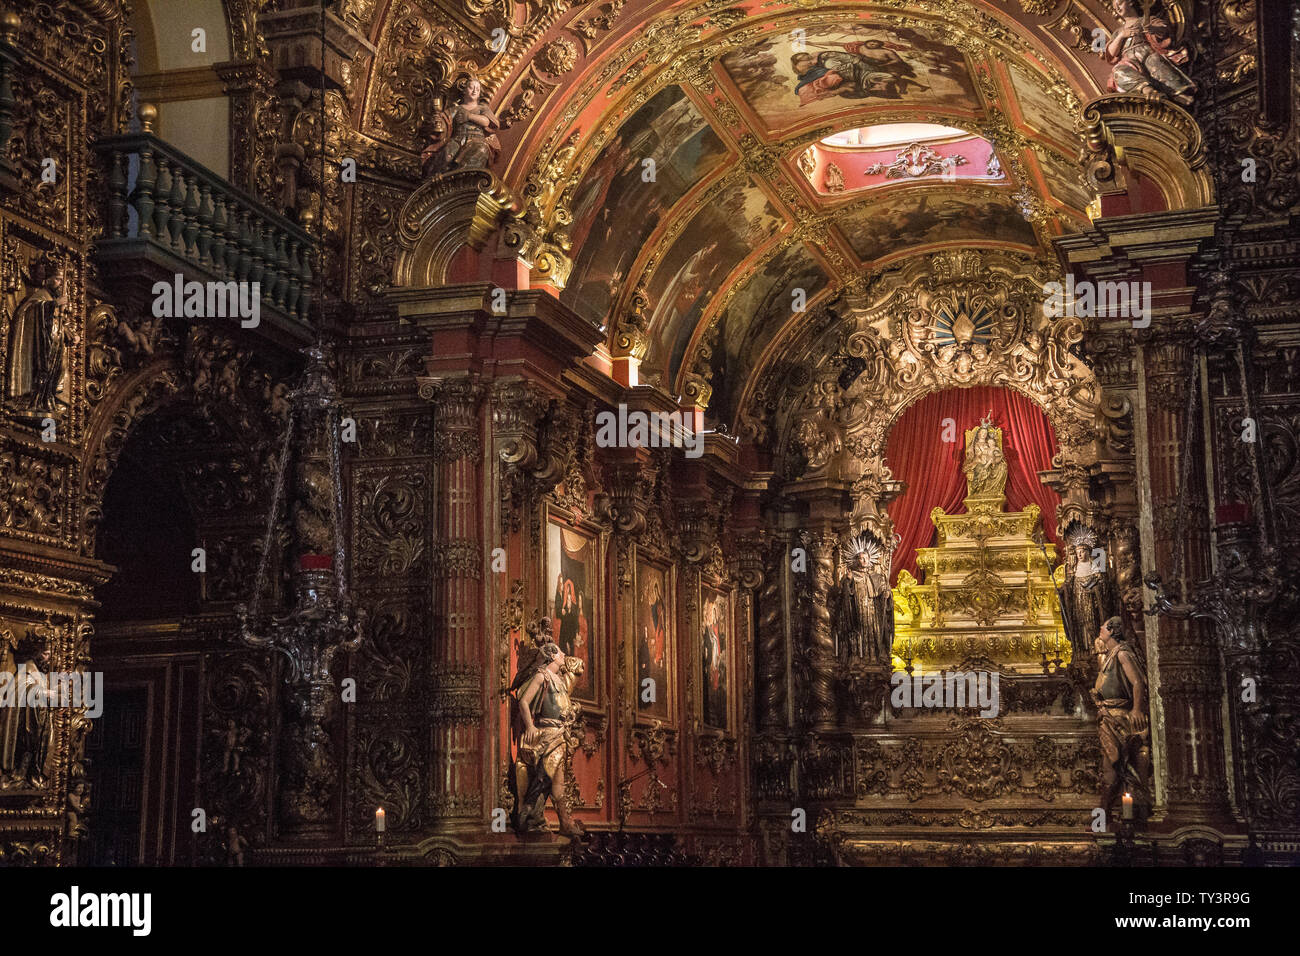 Rio de Janeiro, Brazil - July 7, 2015: The monastery Mosteiro de São Bento, baroque architecture at Rio de Janeiro Stock Photo